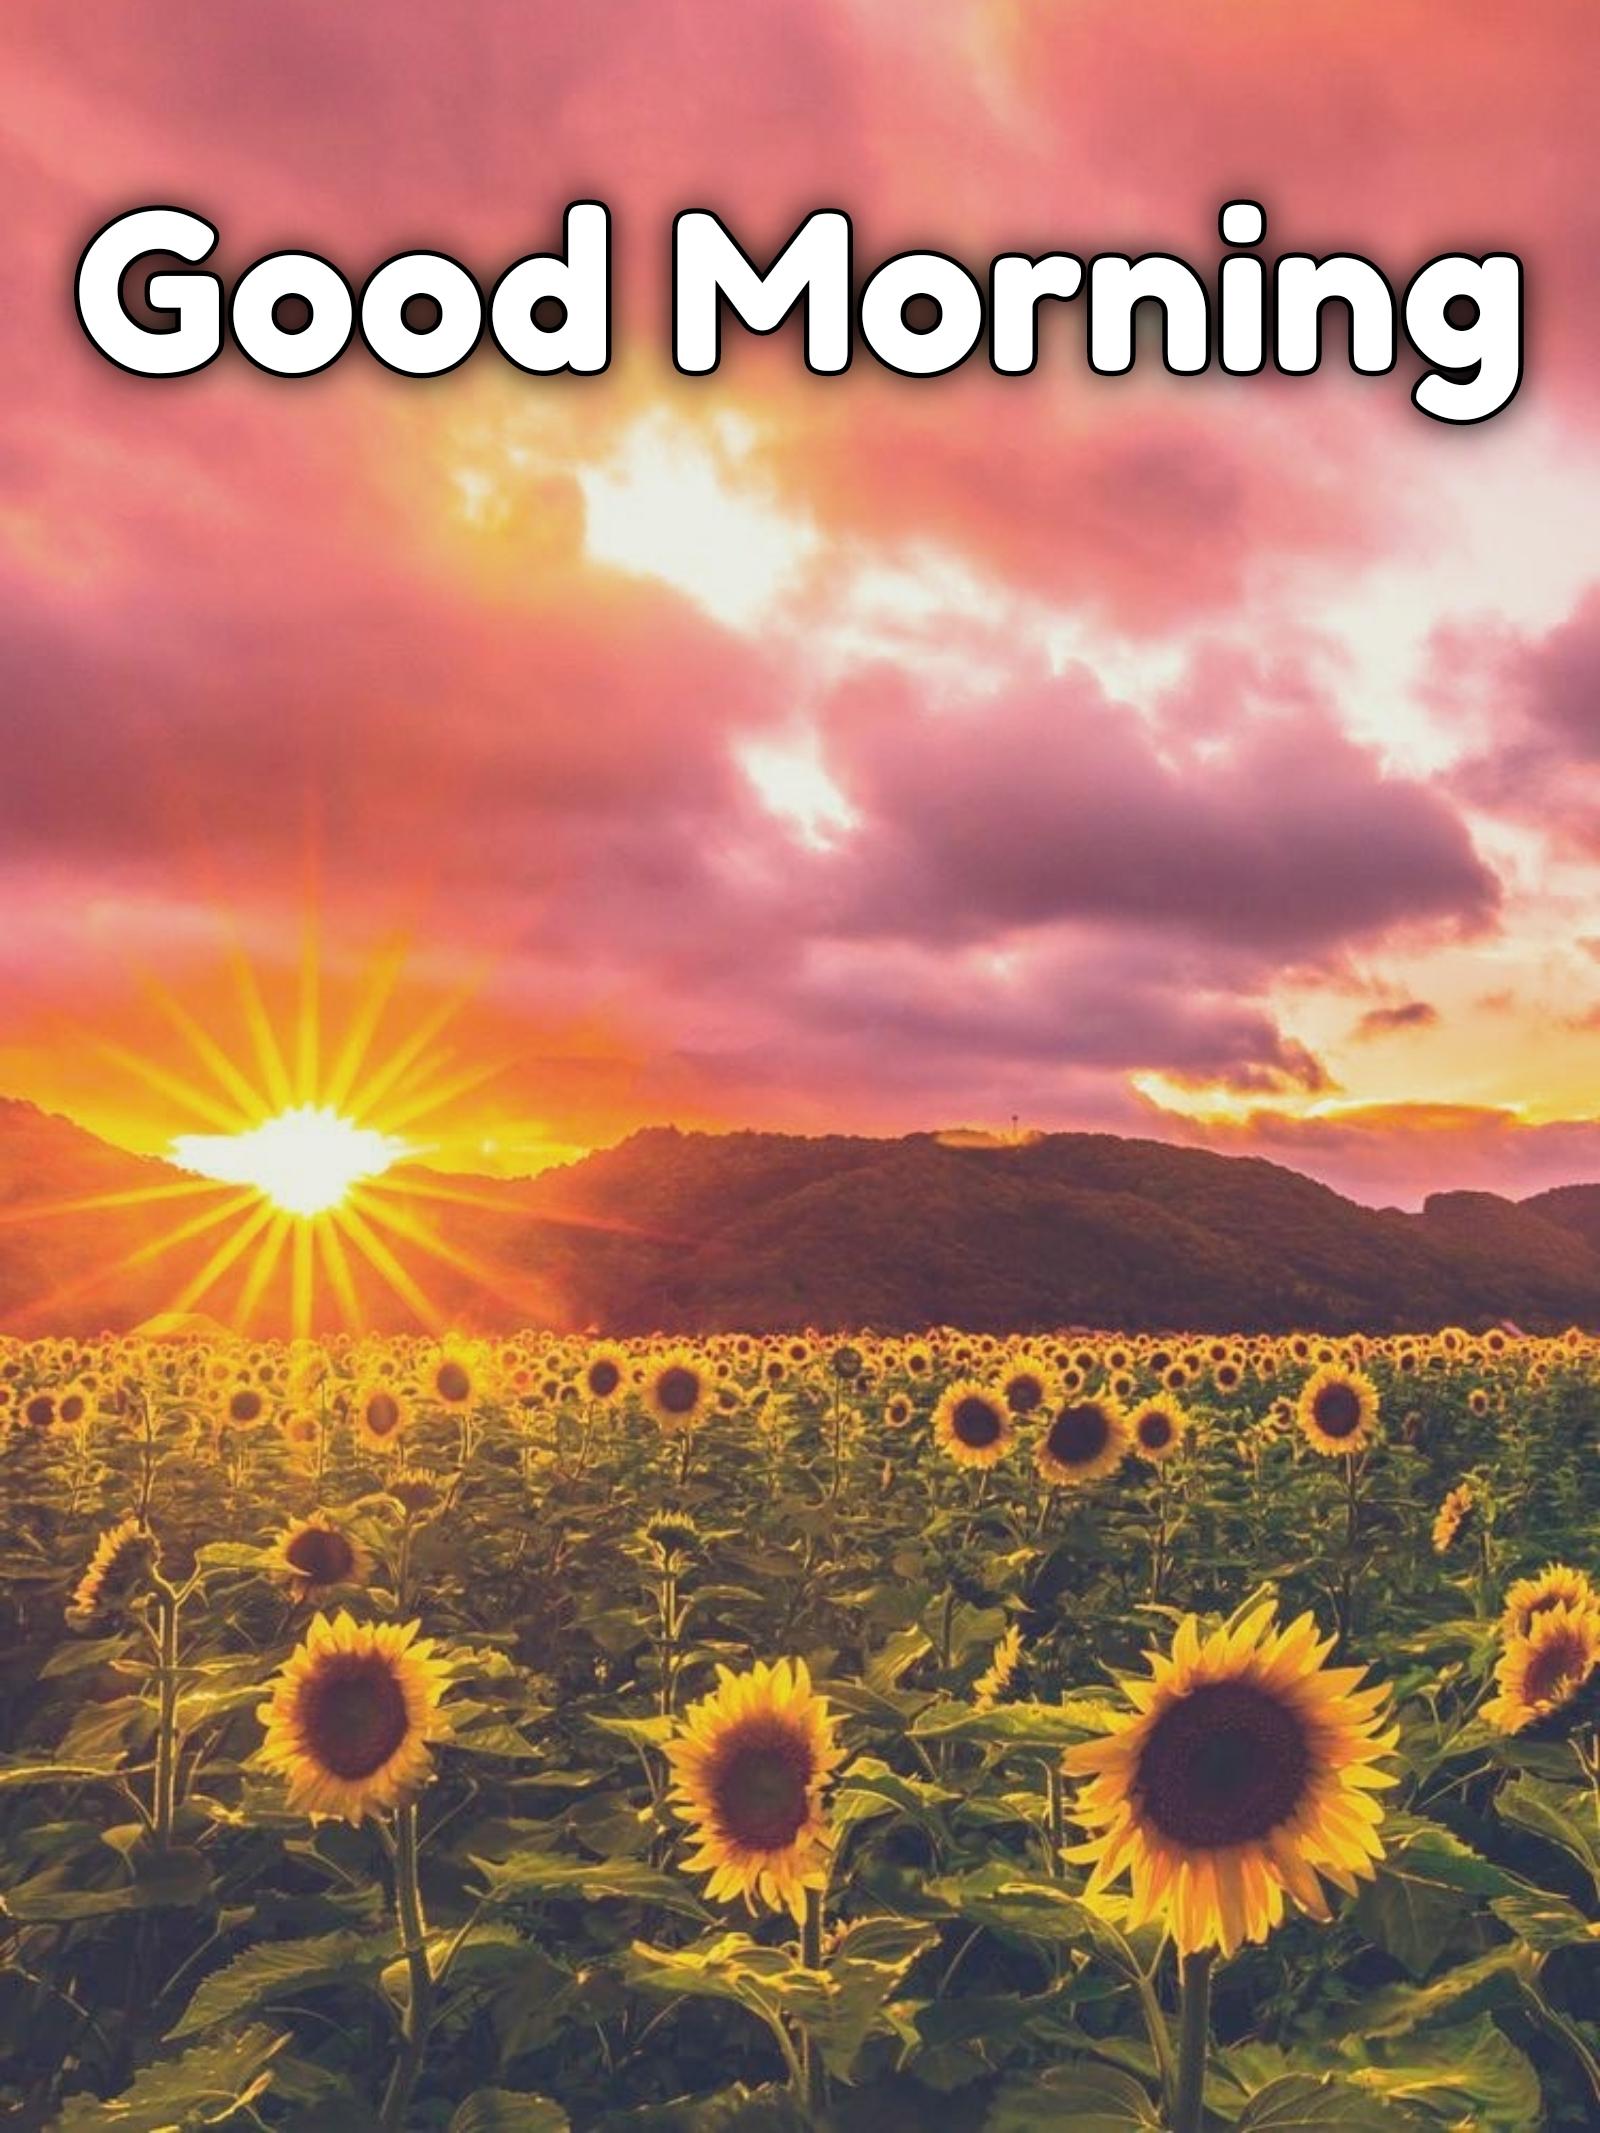 Good Morning Nature Images Hd 1080p Download - ShayariMaza